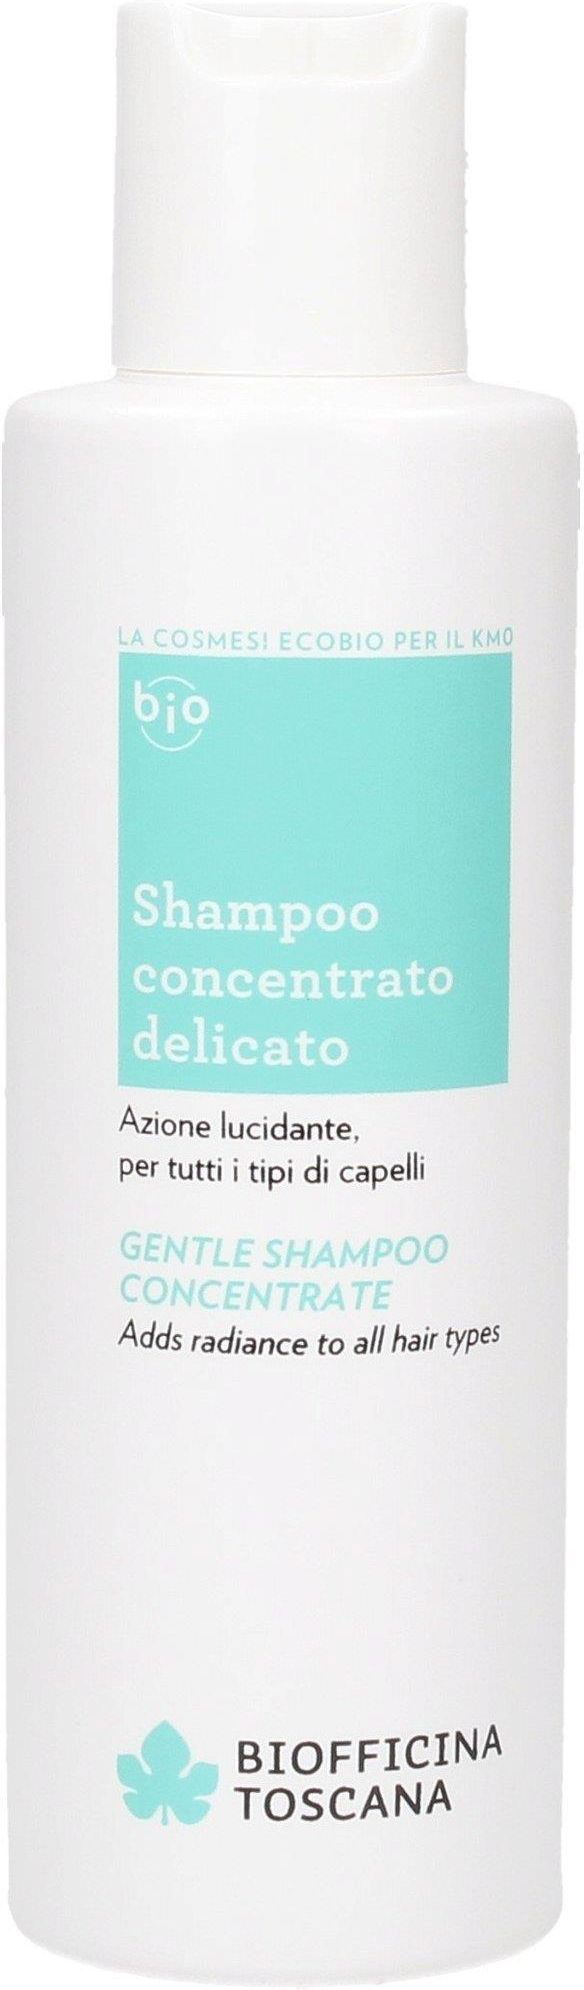 szampon prostujący włosy koncentrat 150ml biofficina toscana opinie